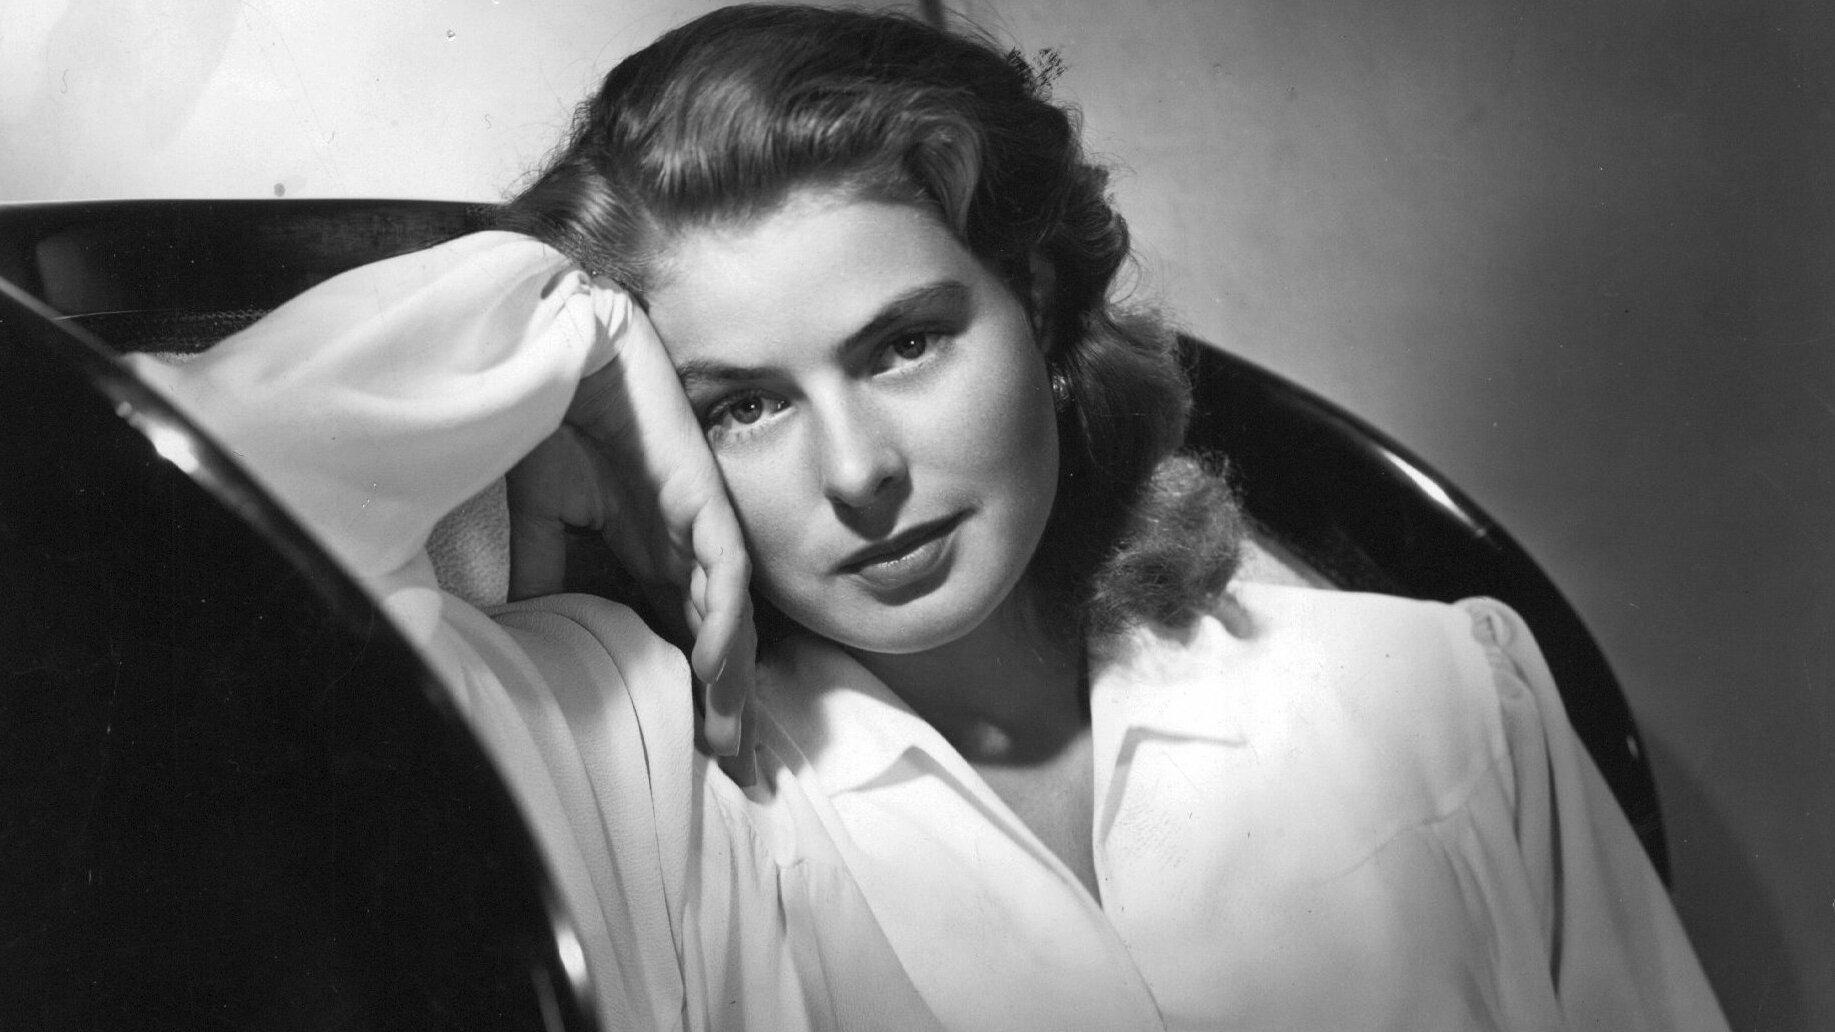 "Gaslighting" härstammar från filmen "Gaslight" (1944) som gav Ingrid Bergman en Oscar för bästa kvinnliga huvudroll. Arkivbild.